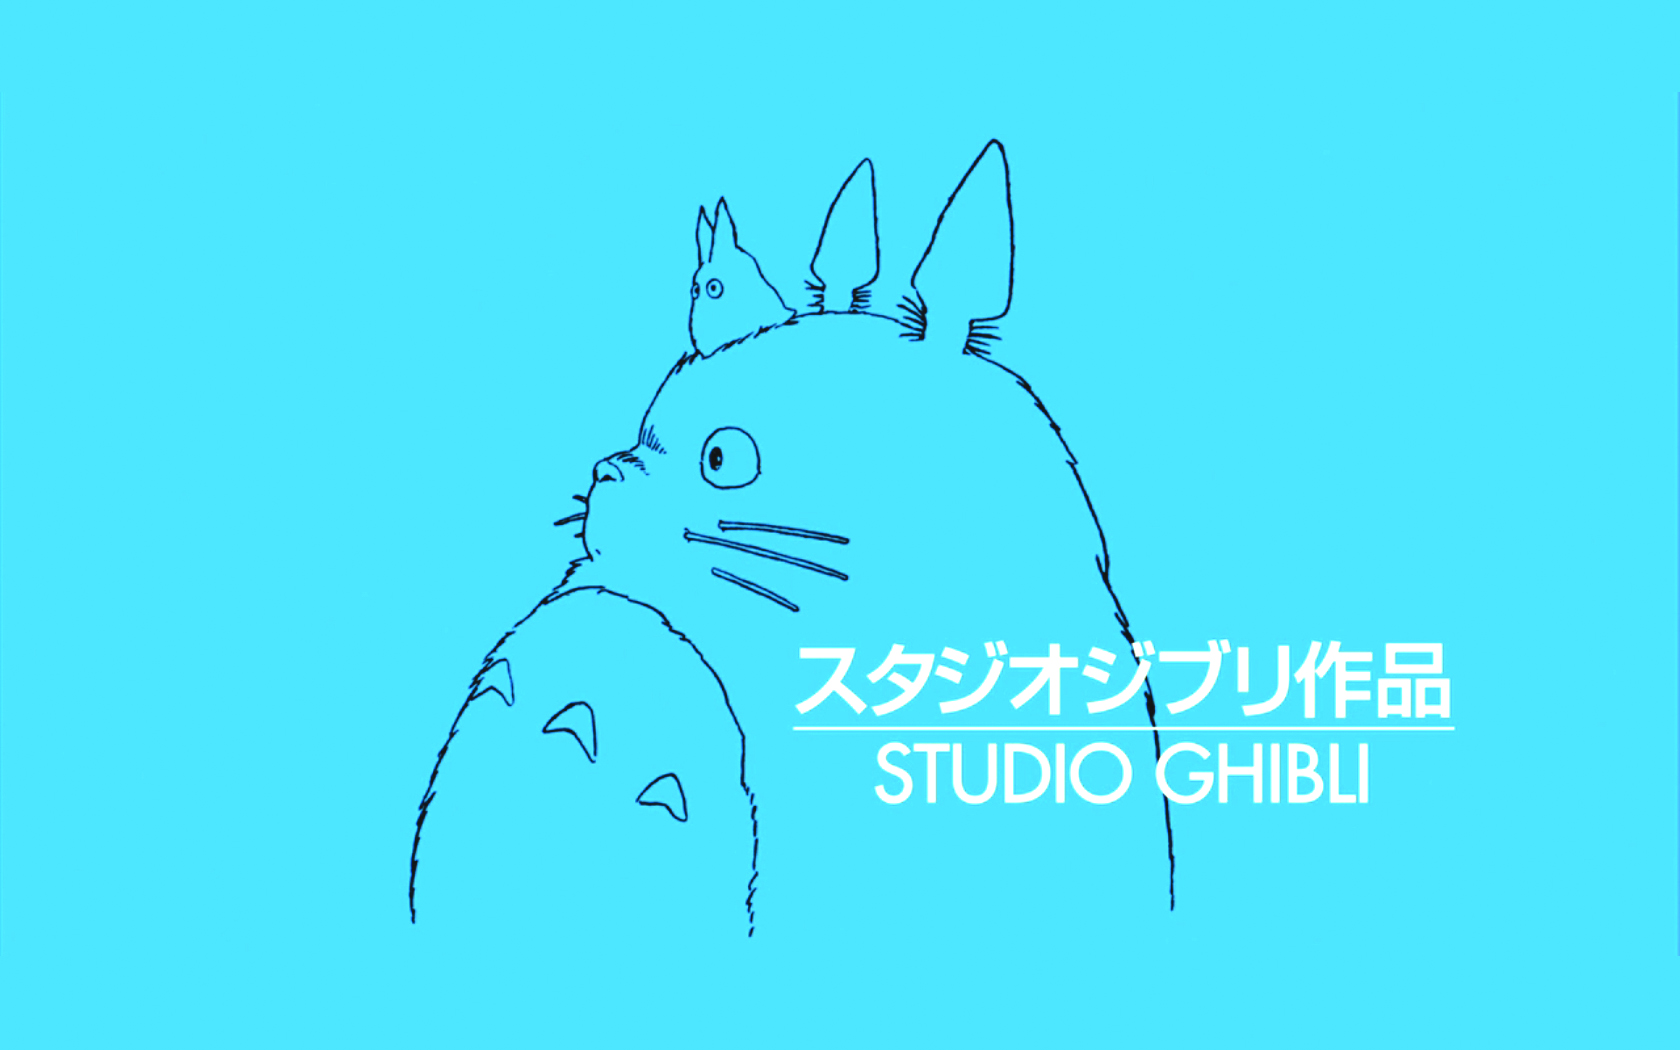 Ghibli Logo 